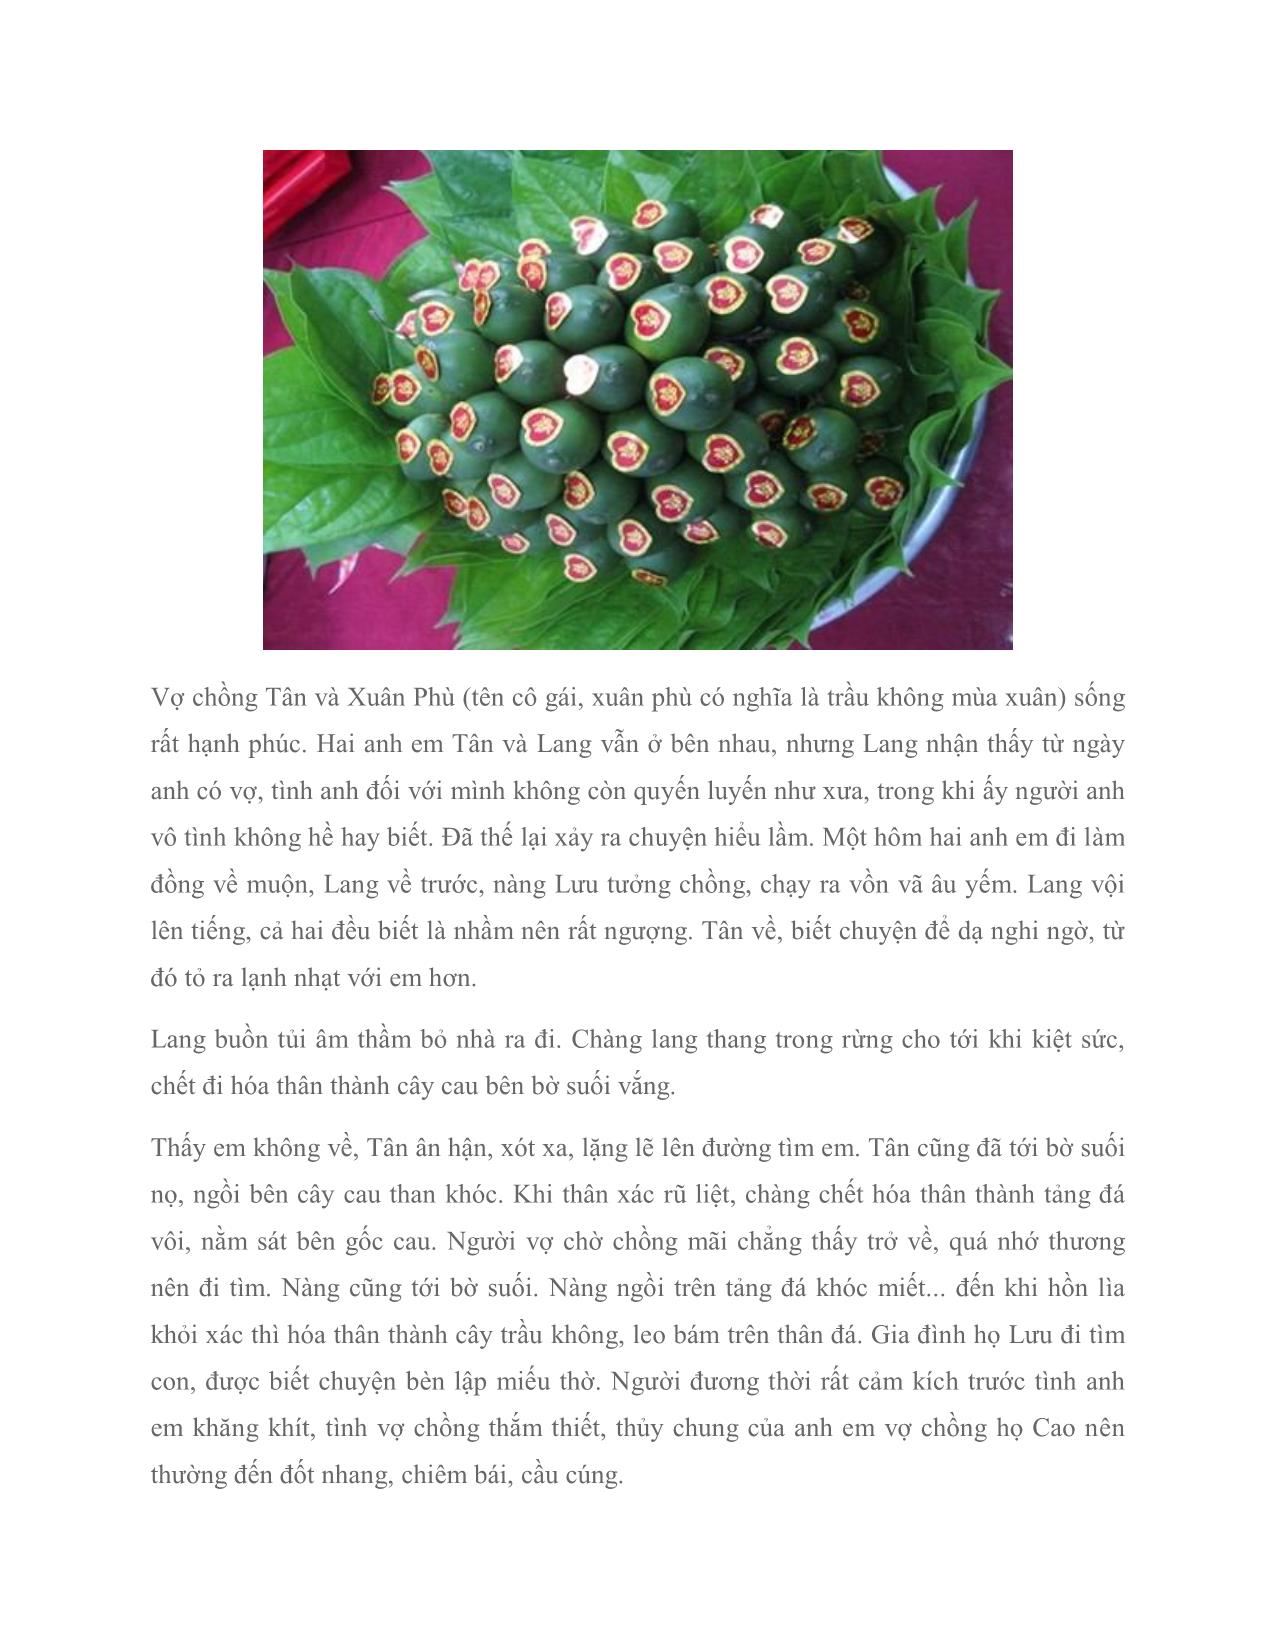 Trầu cau – lễ vật không thể thiếu trong cưới hỏi người Việt trang 2